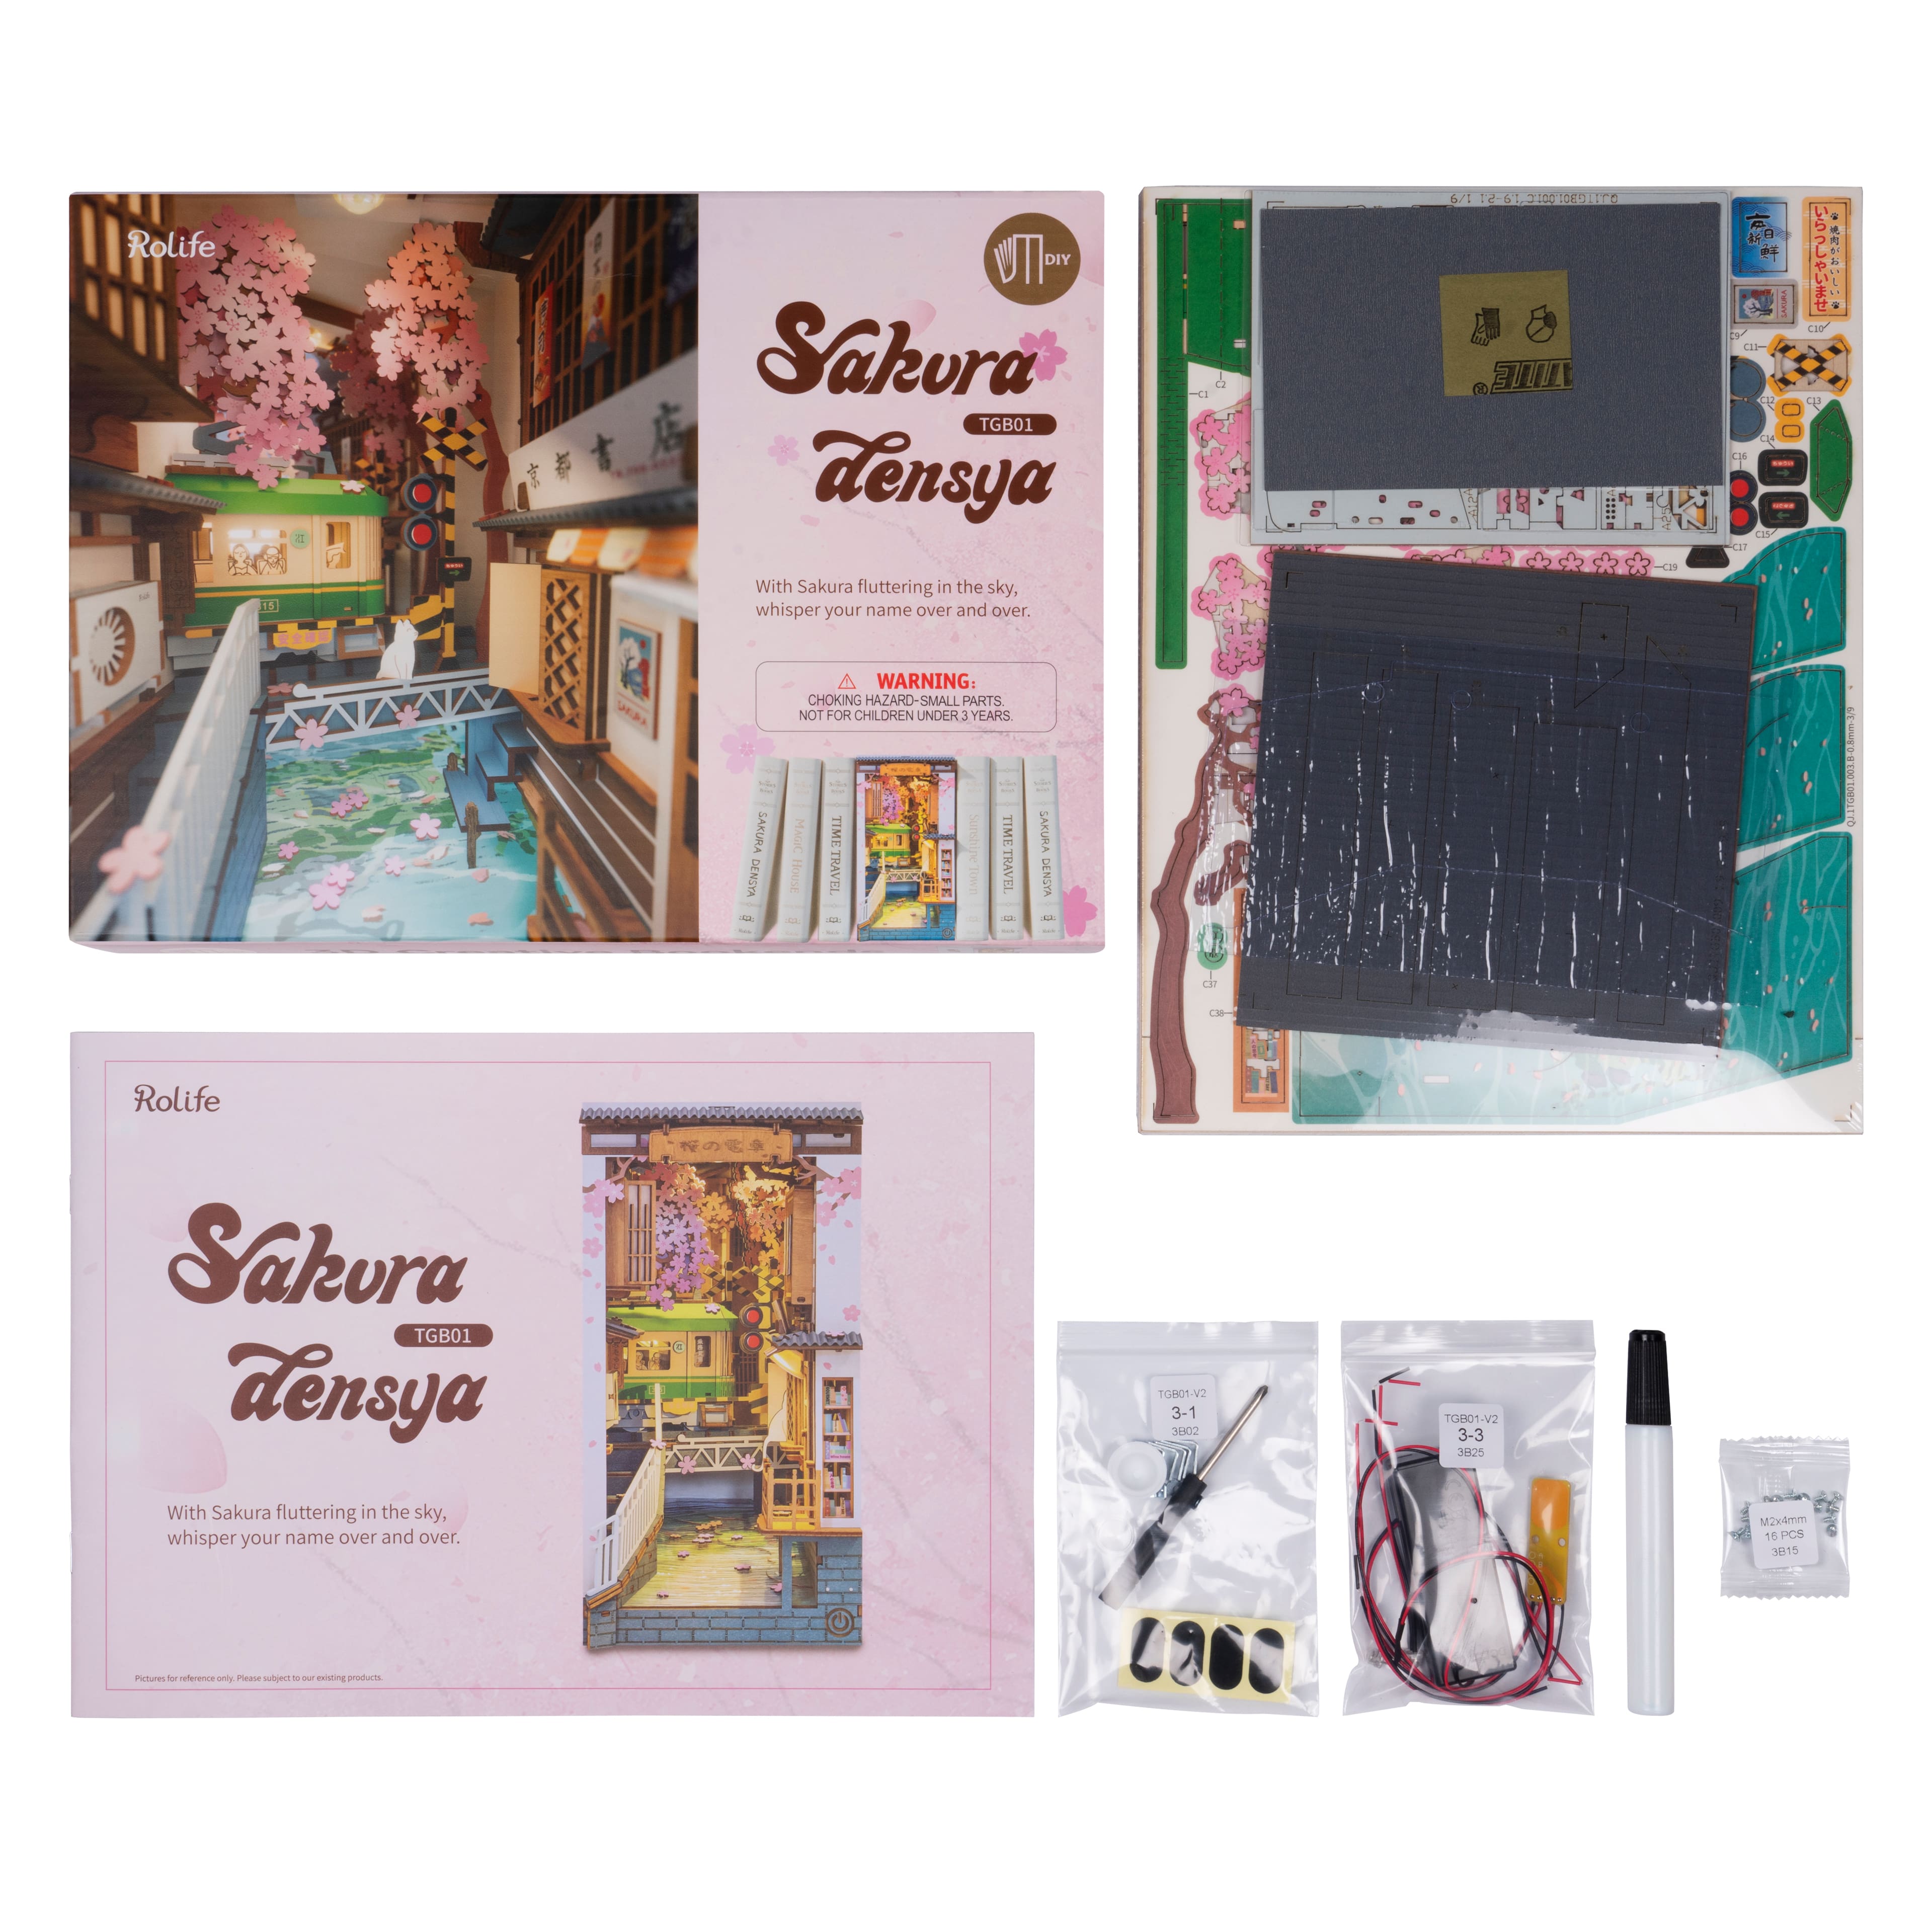 Rolife Sakura Densya Book Nook Shelf Insert TGB01